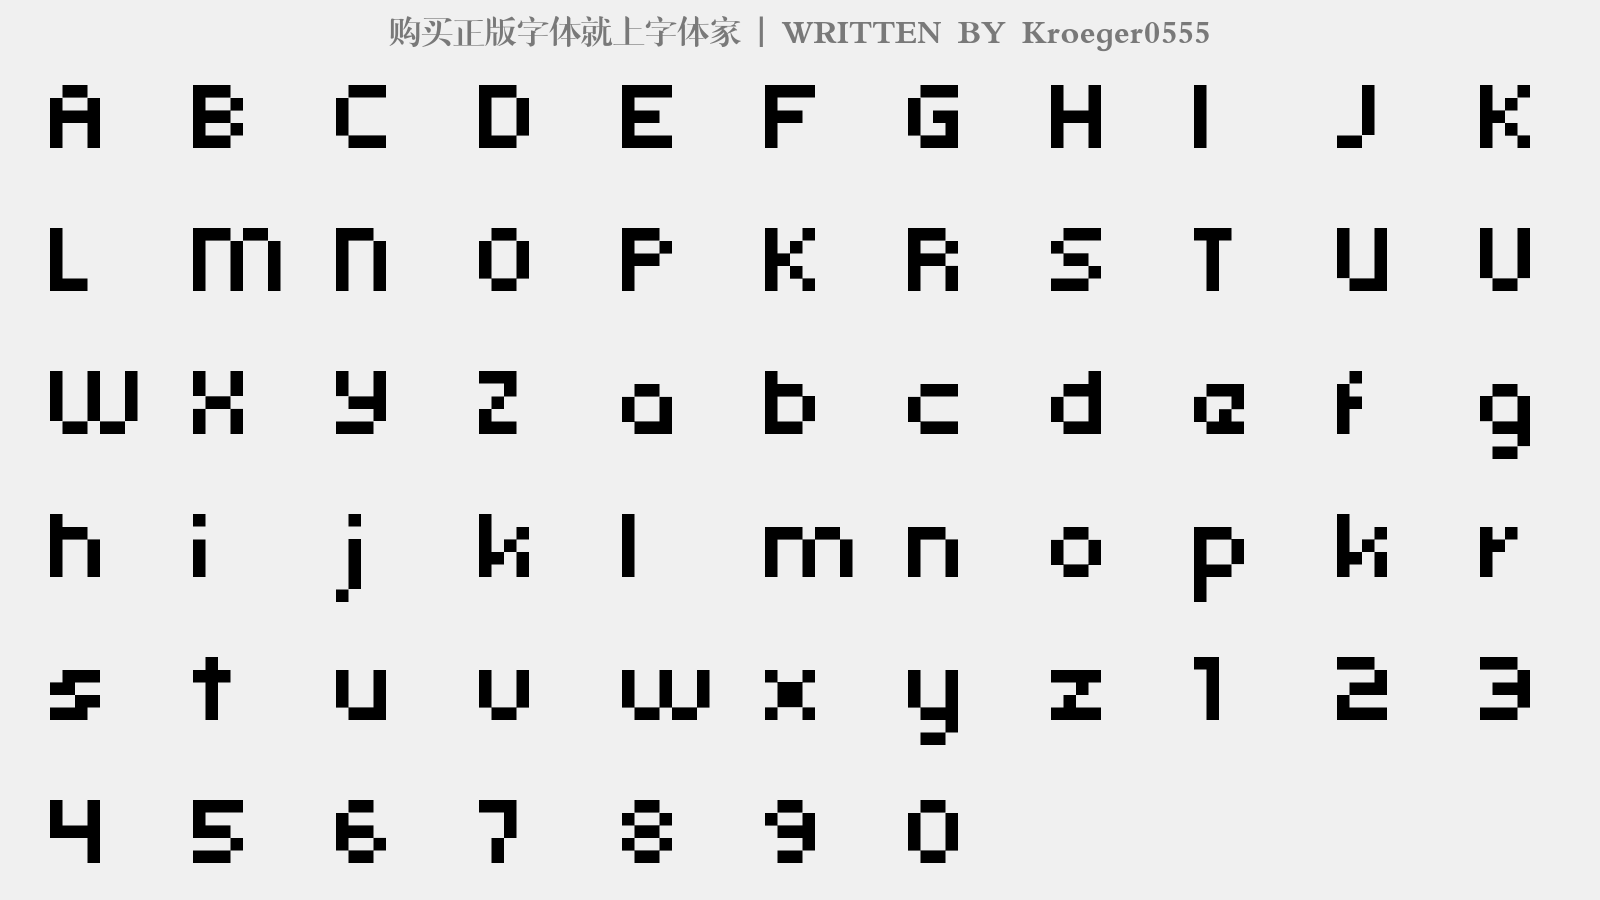 Kroeger0555 - 大写字母/小写字母/数字